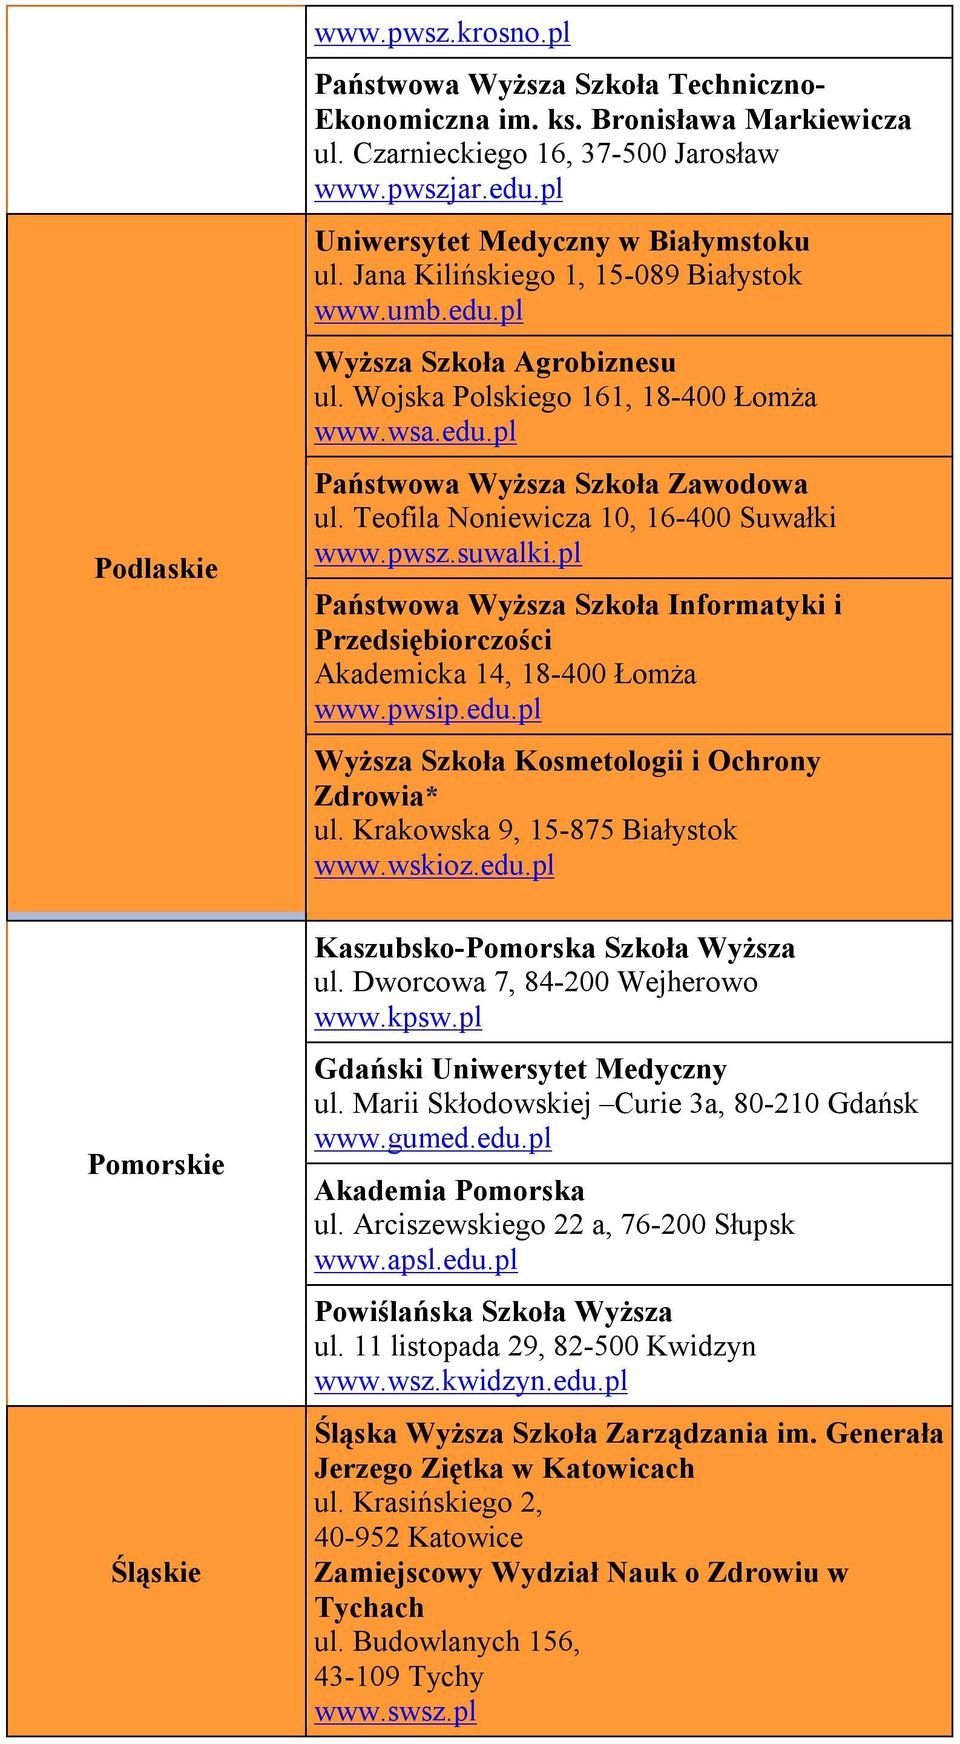 Teofila Noniewicza 10, 16-400 Suwałki www.pwsz.suwalki.pl Państwowa Wyższa Szkoła Informatyki i Przedsiębiorczości Akademicka 14, 18-400 Łomża www.pwsip.edu.